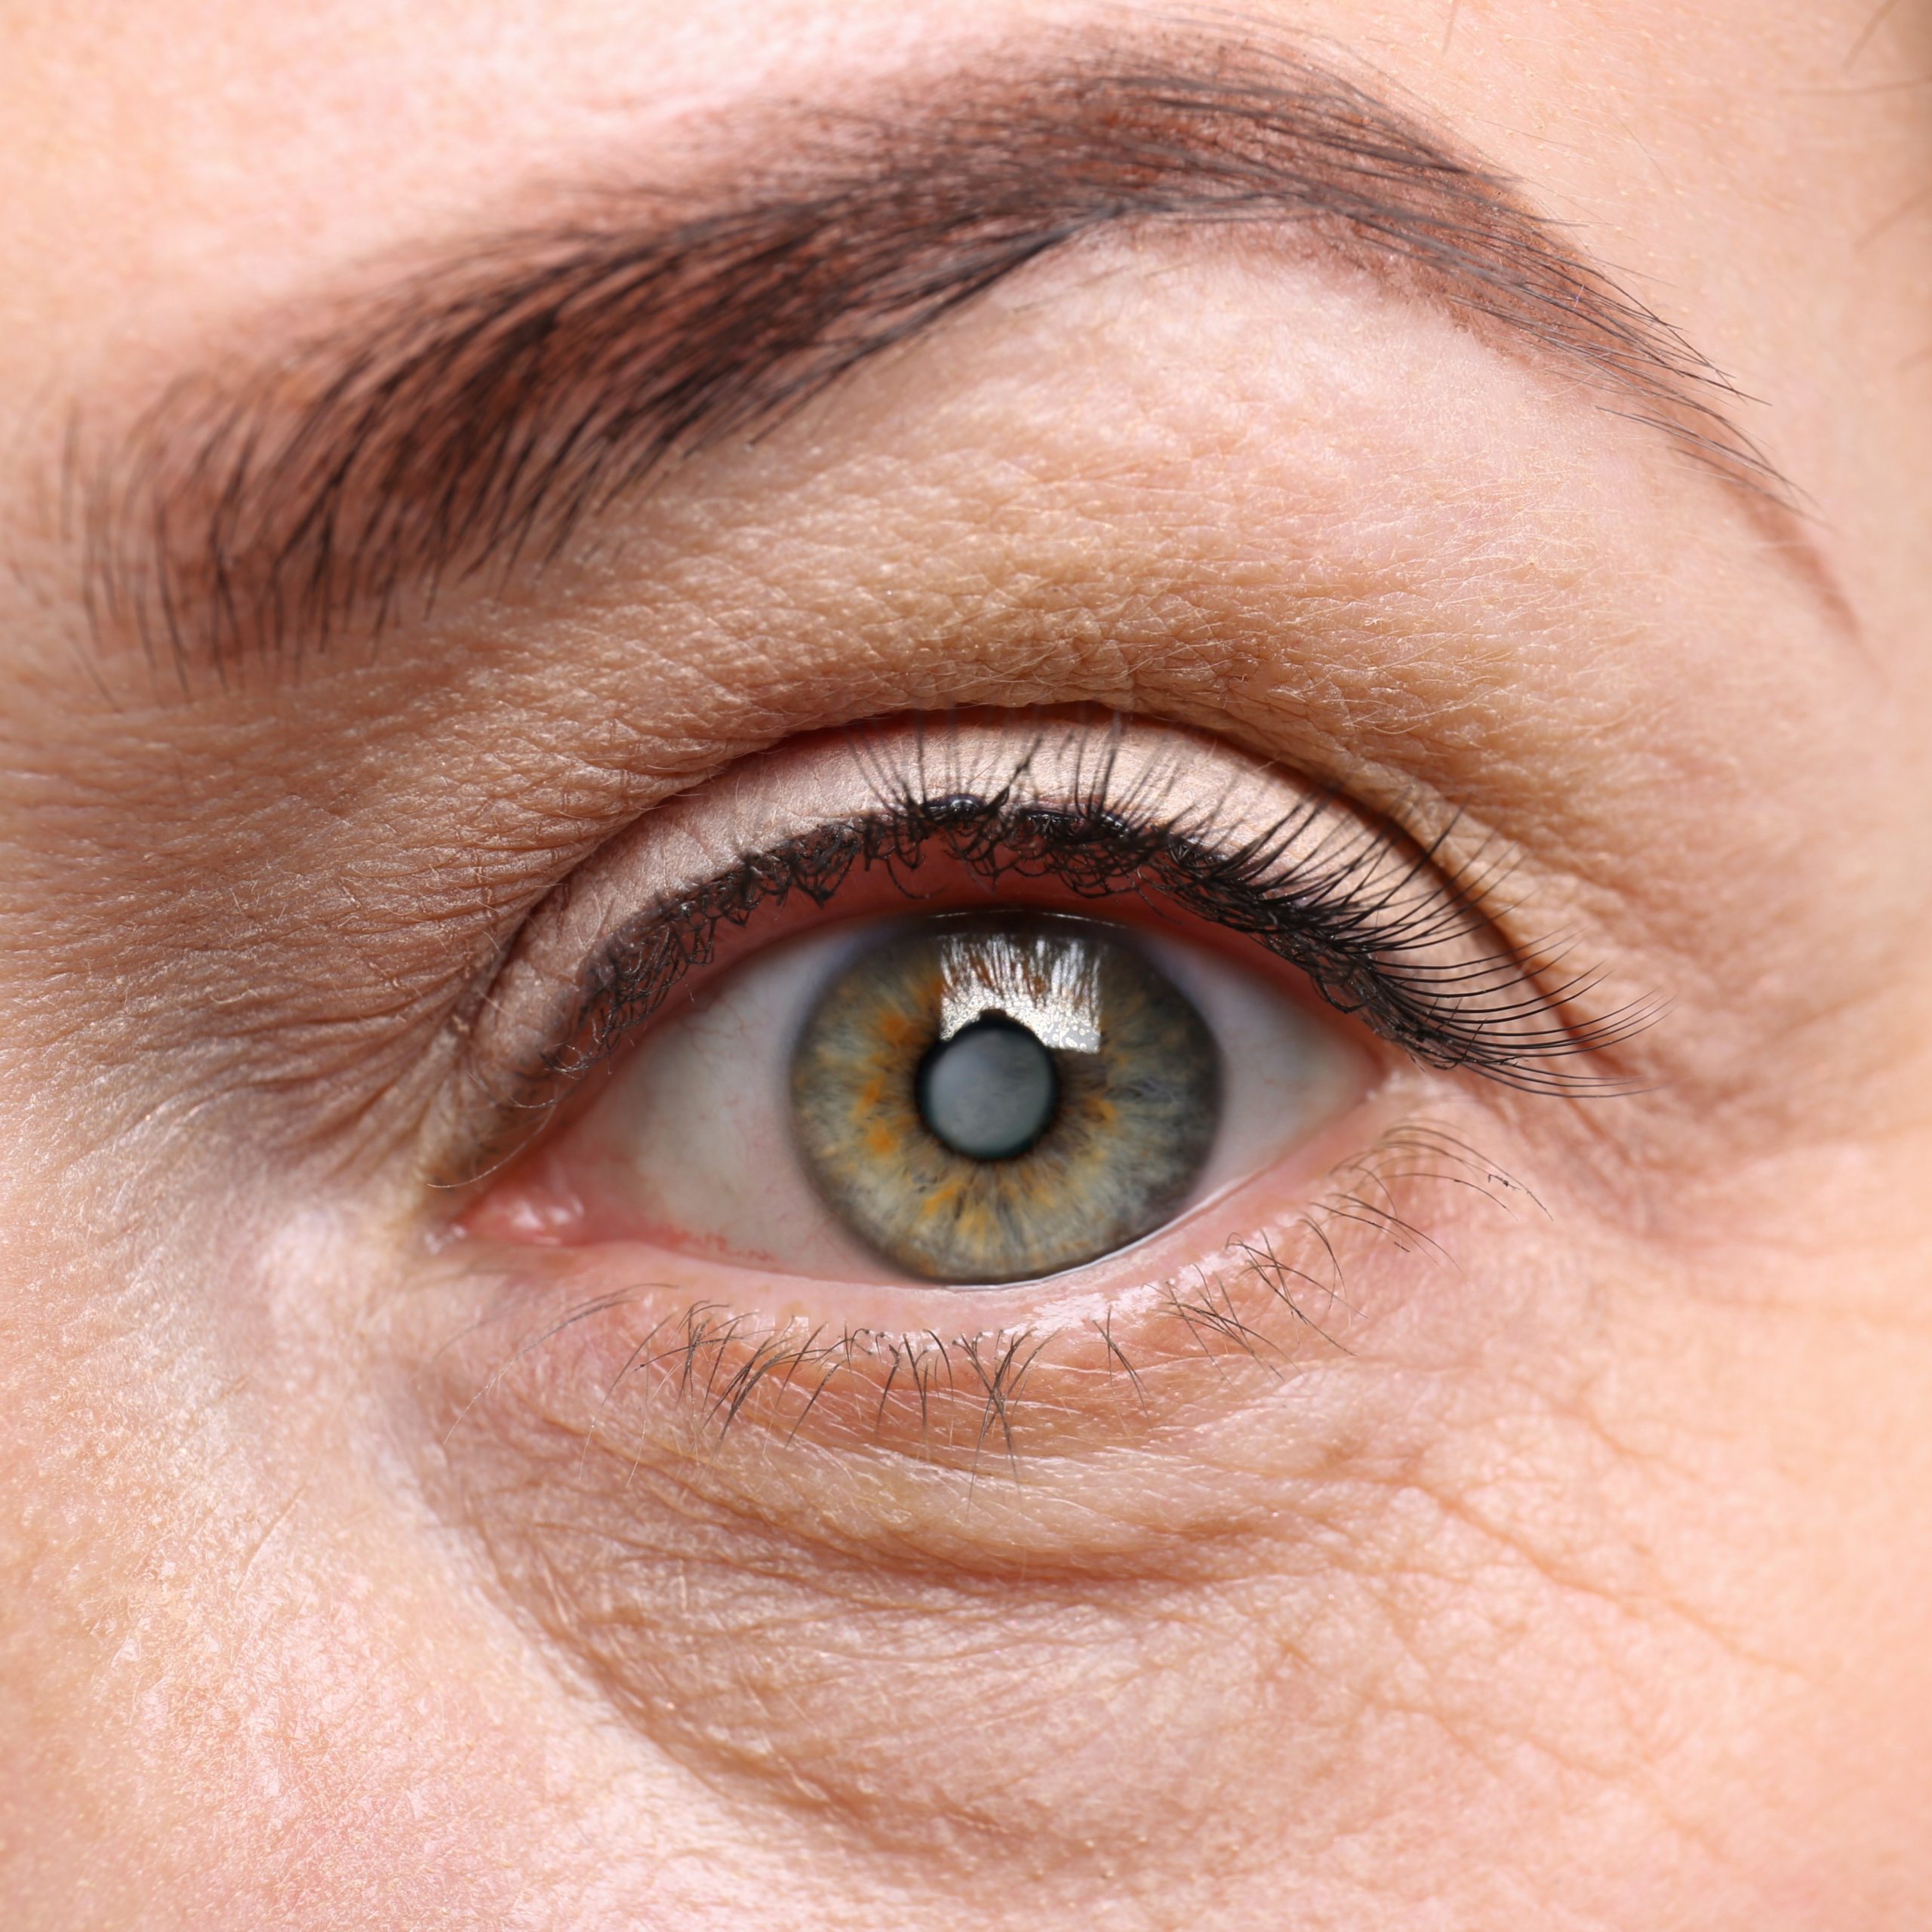 Cataract concept. Senior woman's eye, closeup